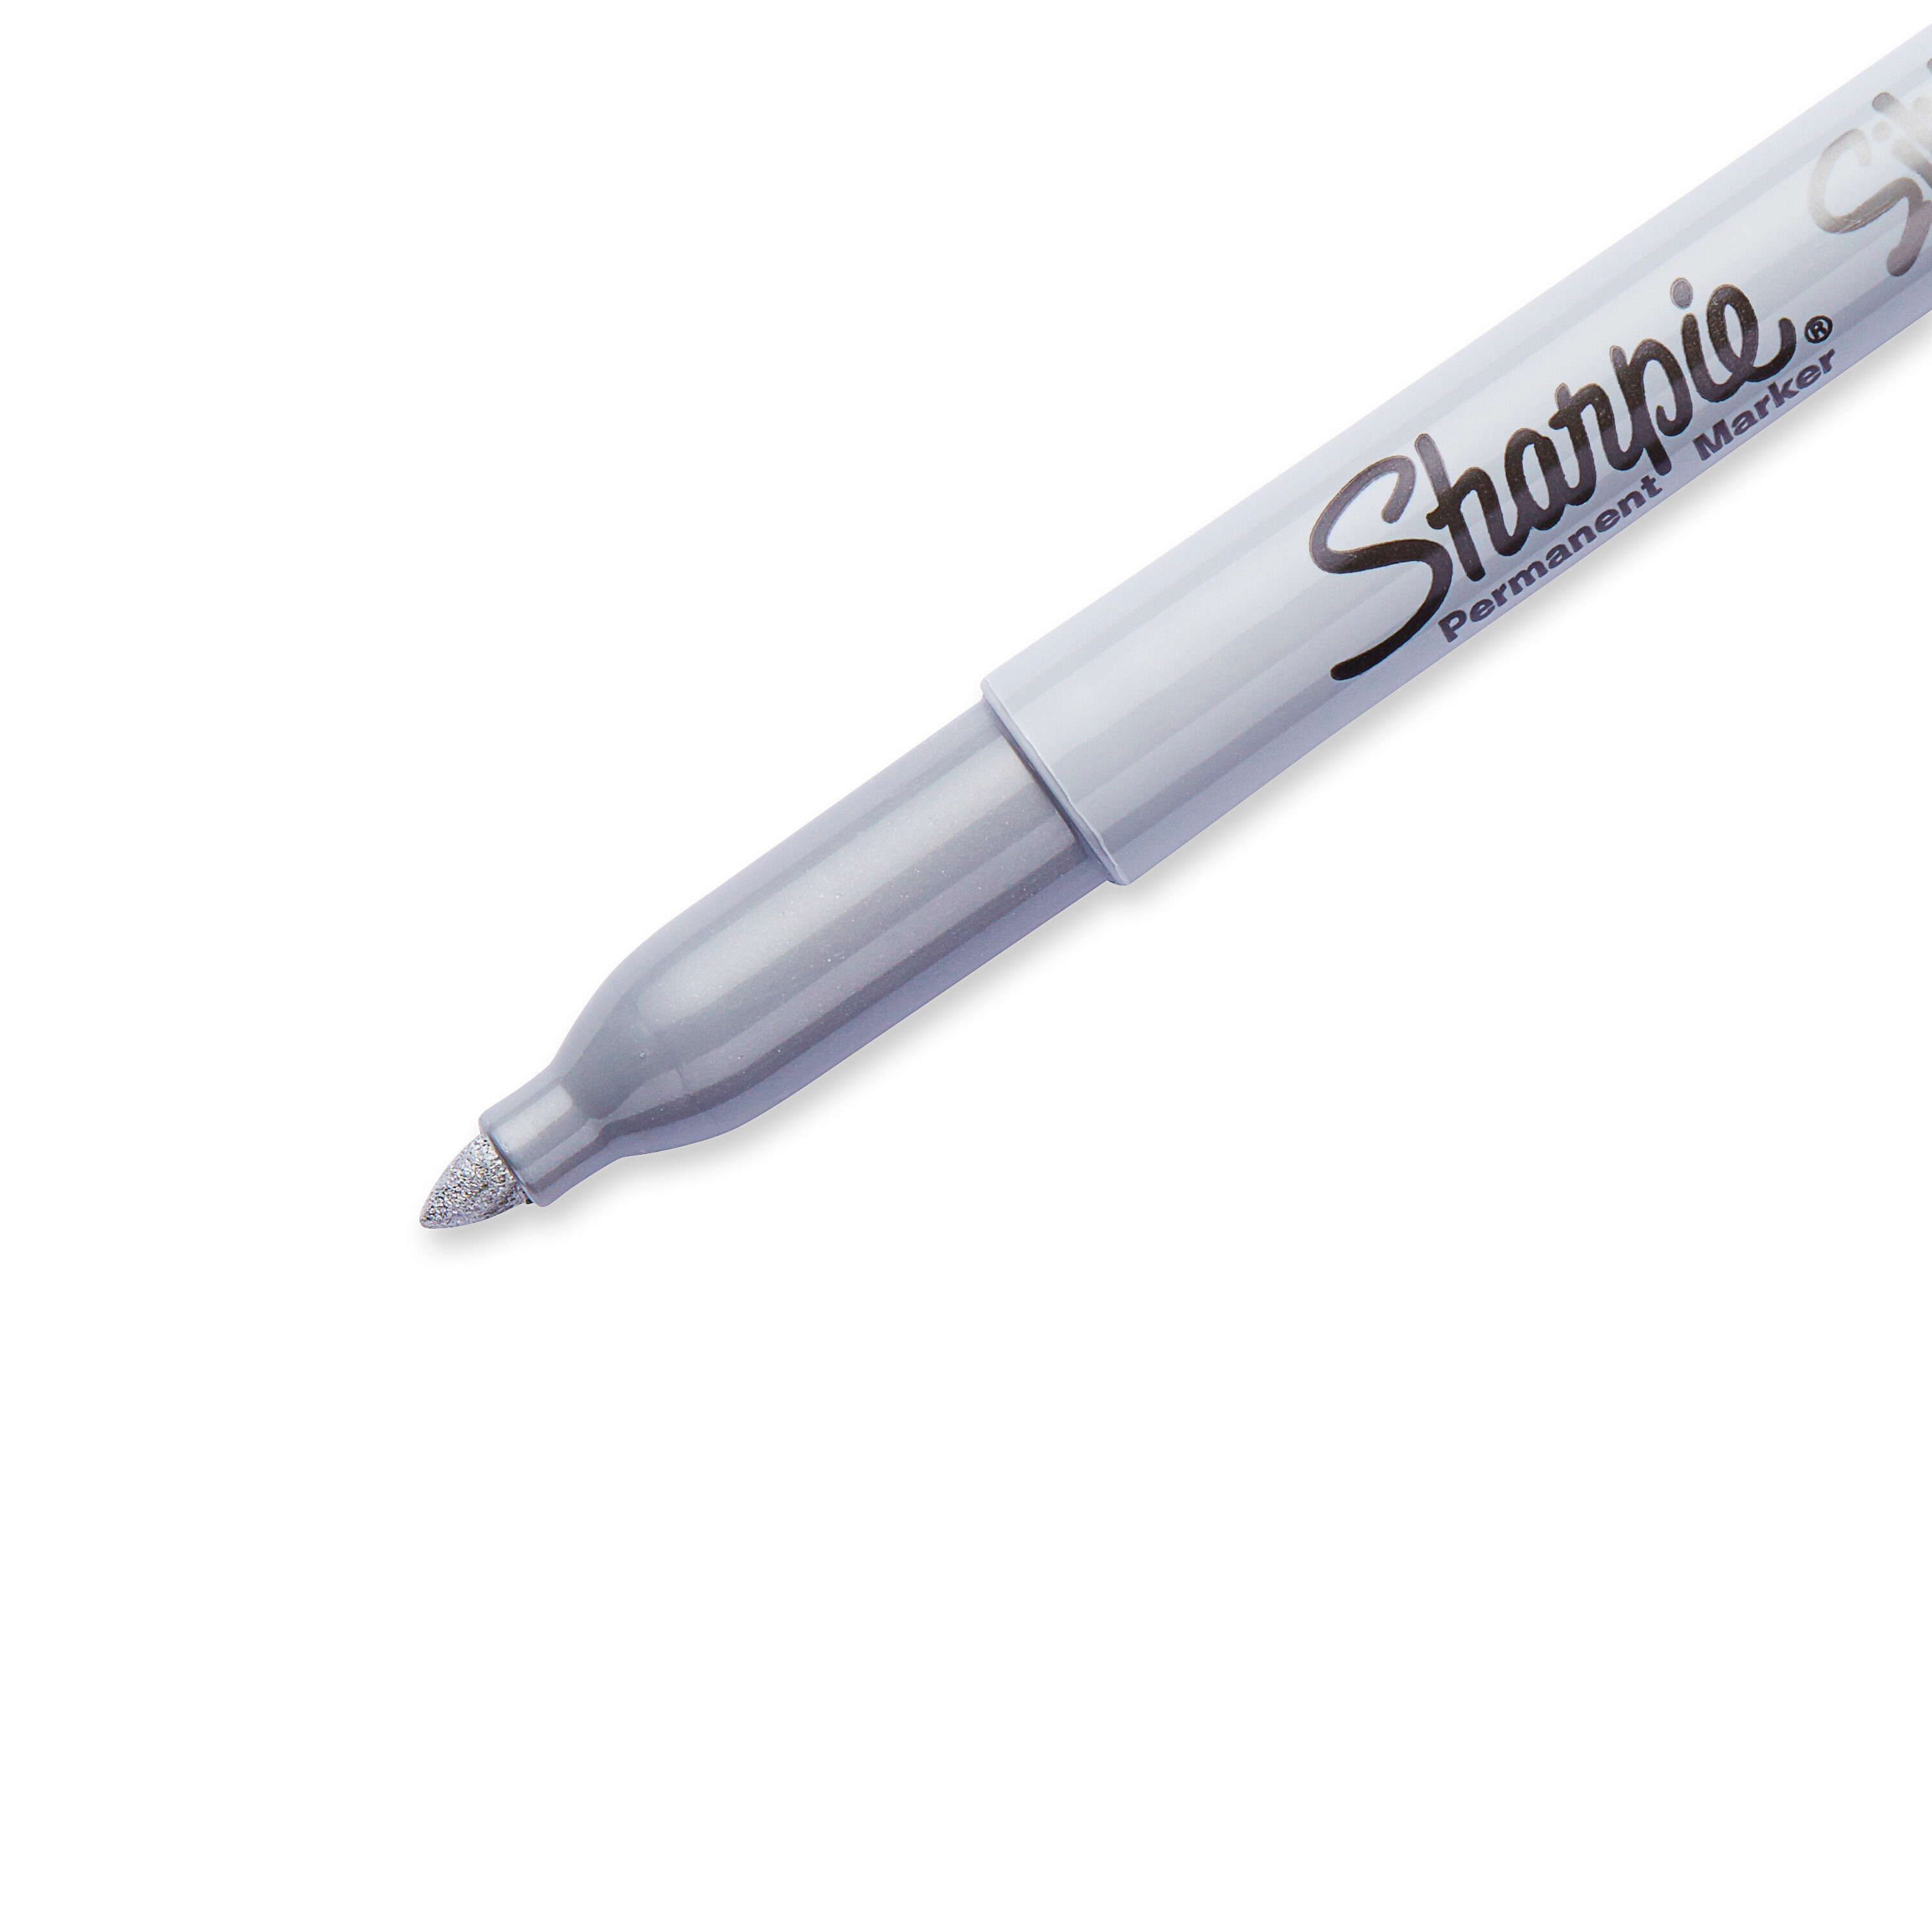 Sharpie® Metallic Fine Point Markers - Silver, 2 pk - Kroger